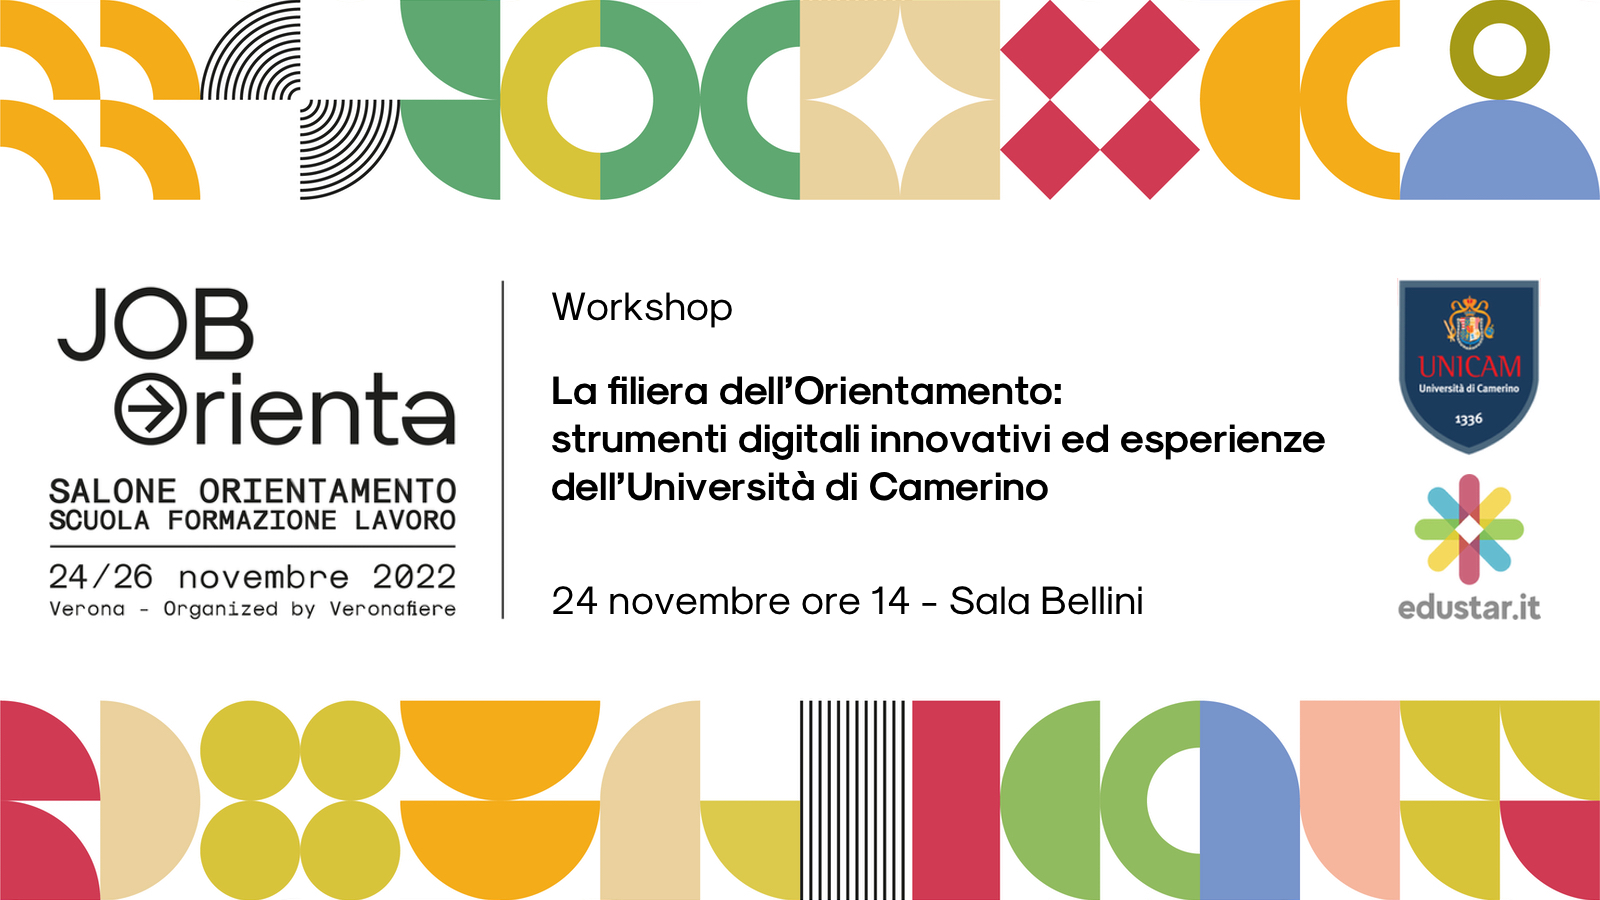 Immagine articolo Strumenti digitali innovativi a supporto dell’orientamento: il nostro workshop al Job Orienta con l’Università di Camerino